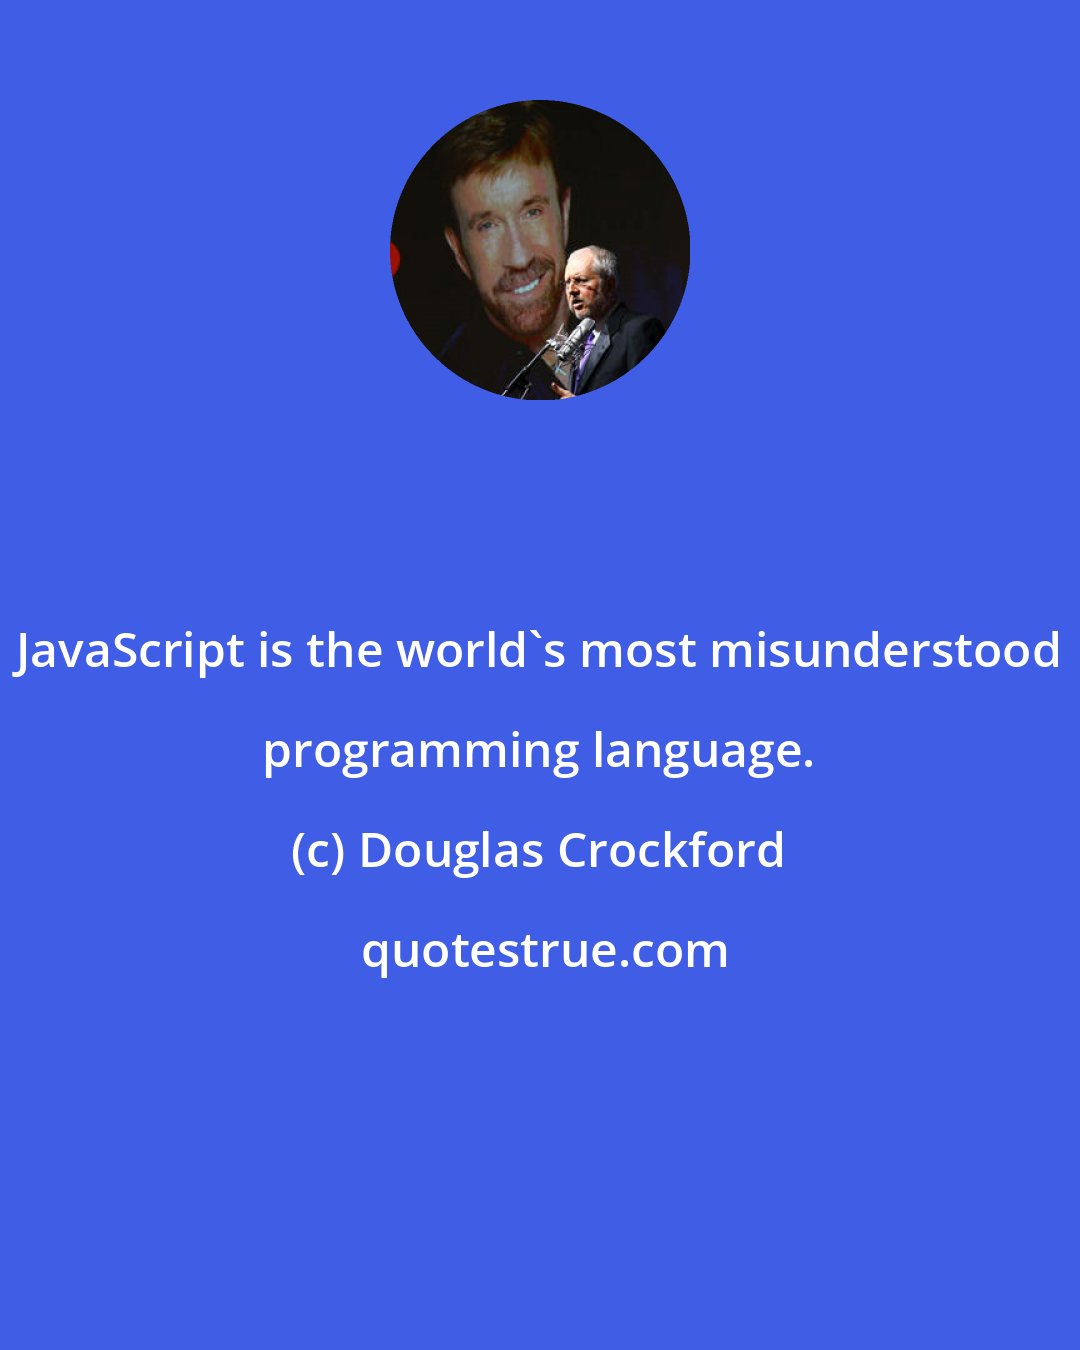 Douglas Crockford: JavaScript is the world's most misunderstood programming language.